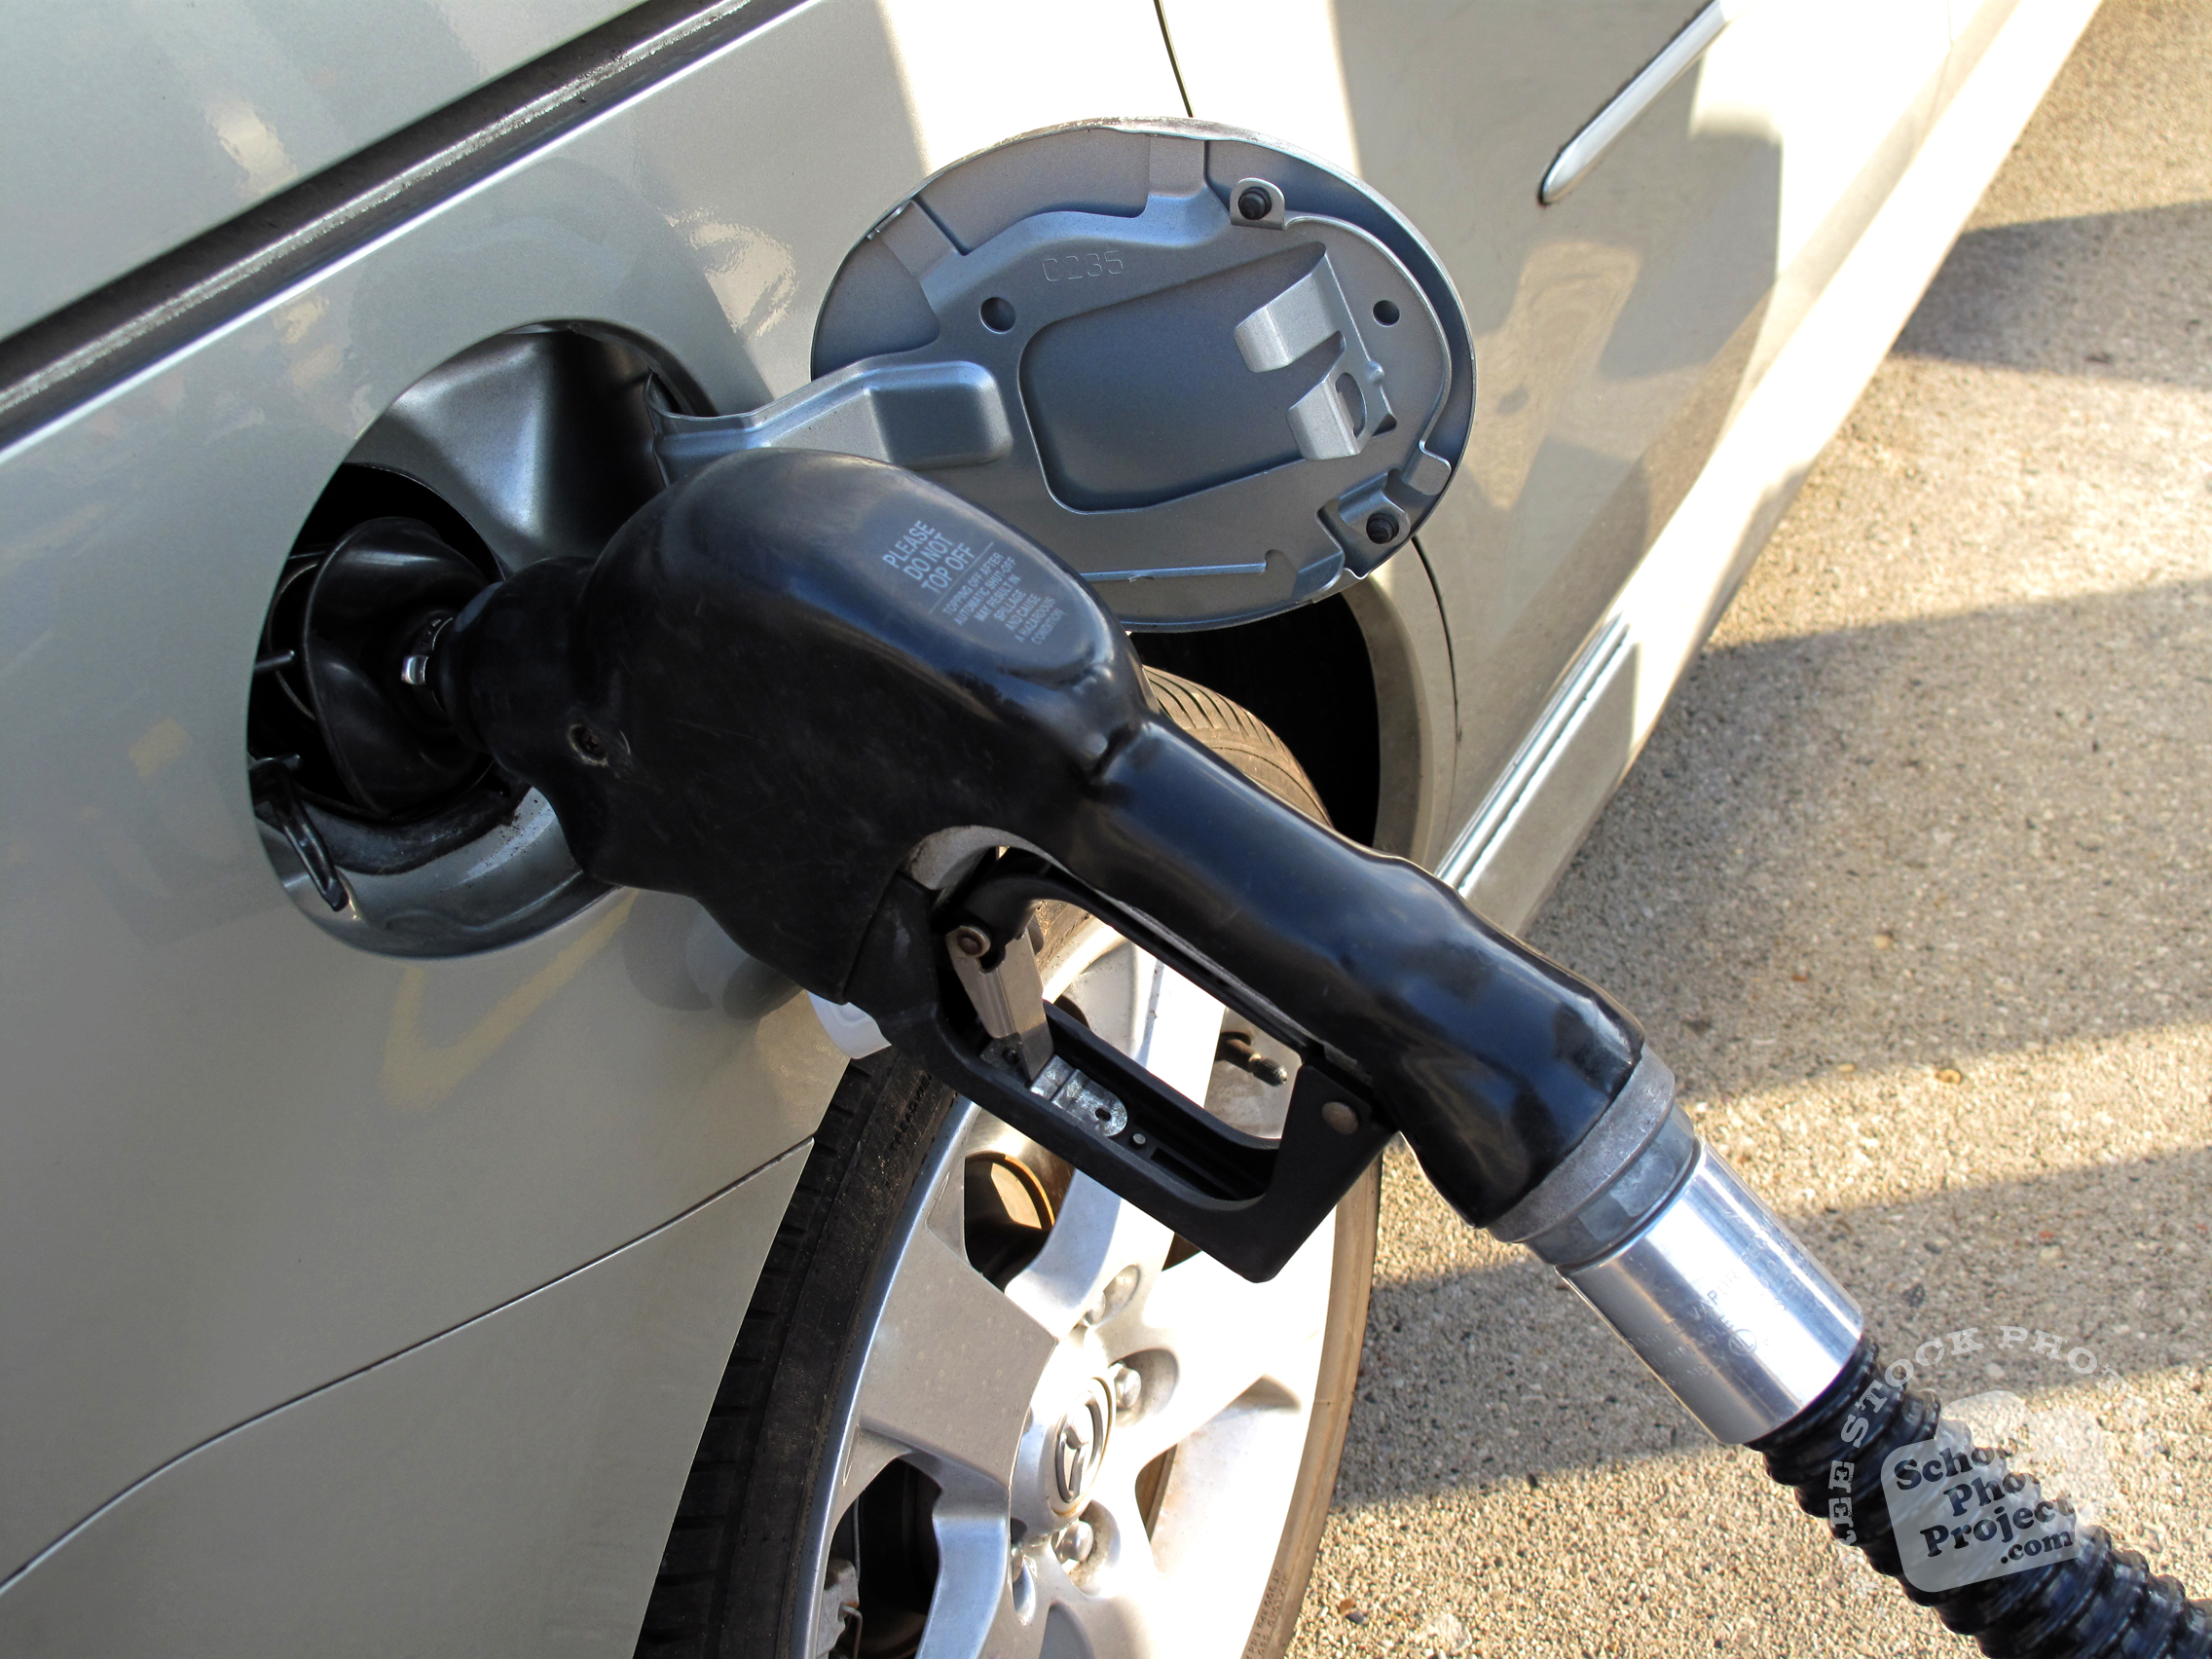 S. Arabistan’da benzin fiyatlarının zamlanmasına ilişkin açıklama